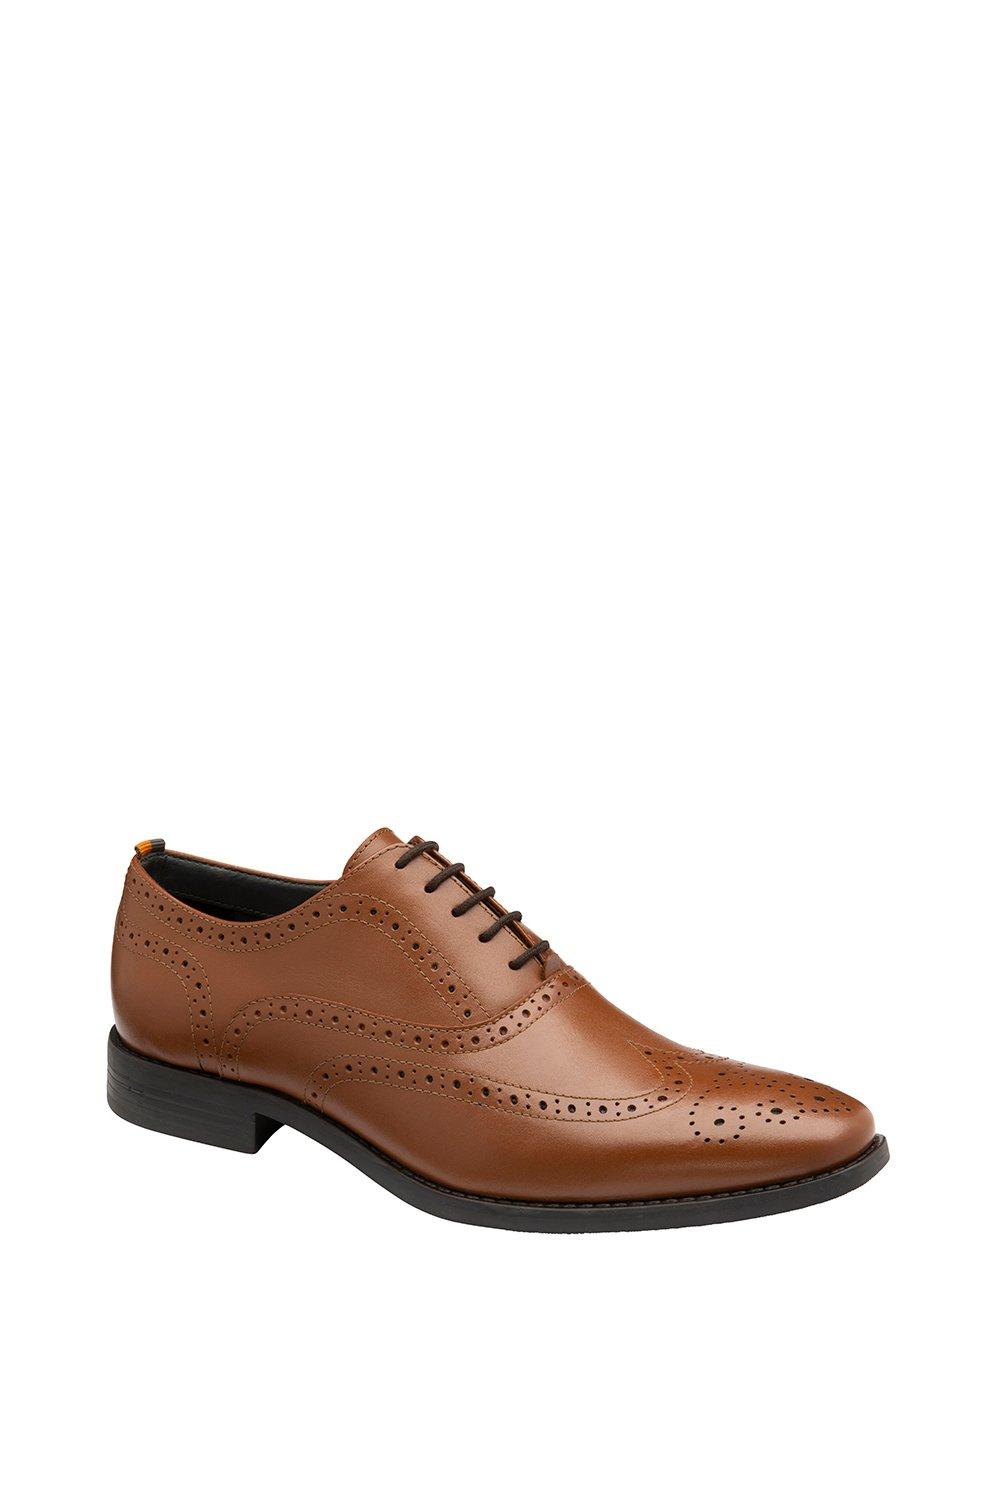 Кожаные туфли-броги Chatsworth Frank Wright, коричневый